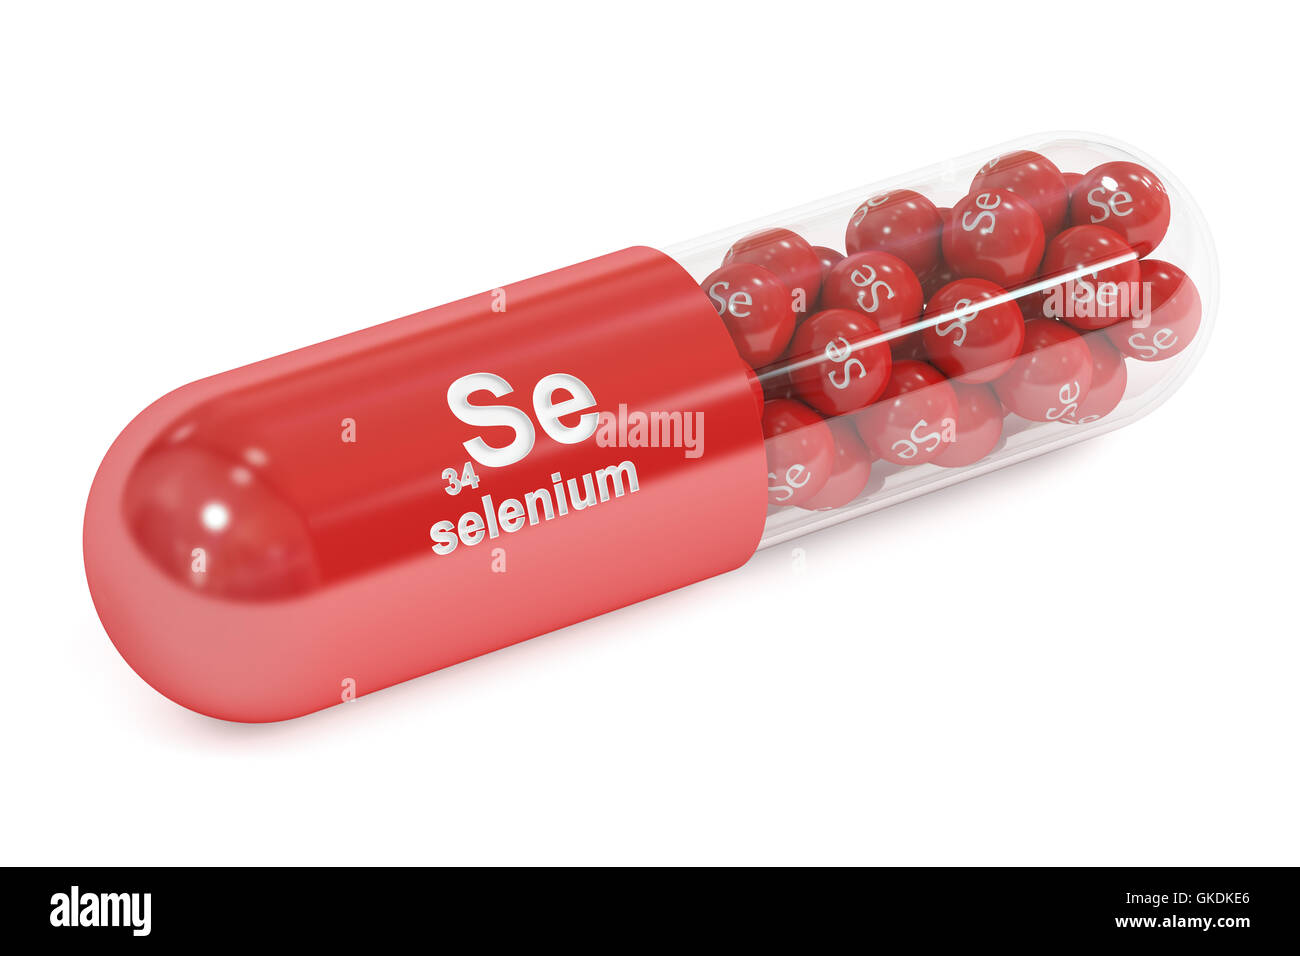 Capsule et l'élément Se sélénium complément alimentaire, rendu 3D isolé sur fond blanc Banque D'Images